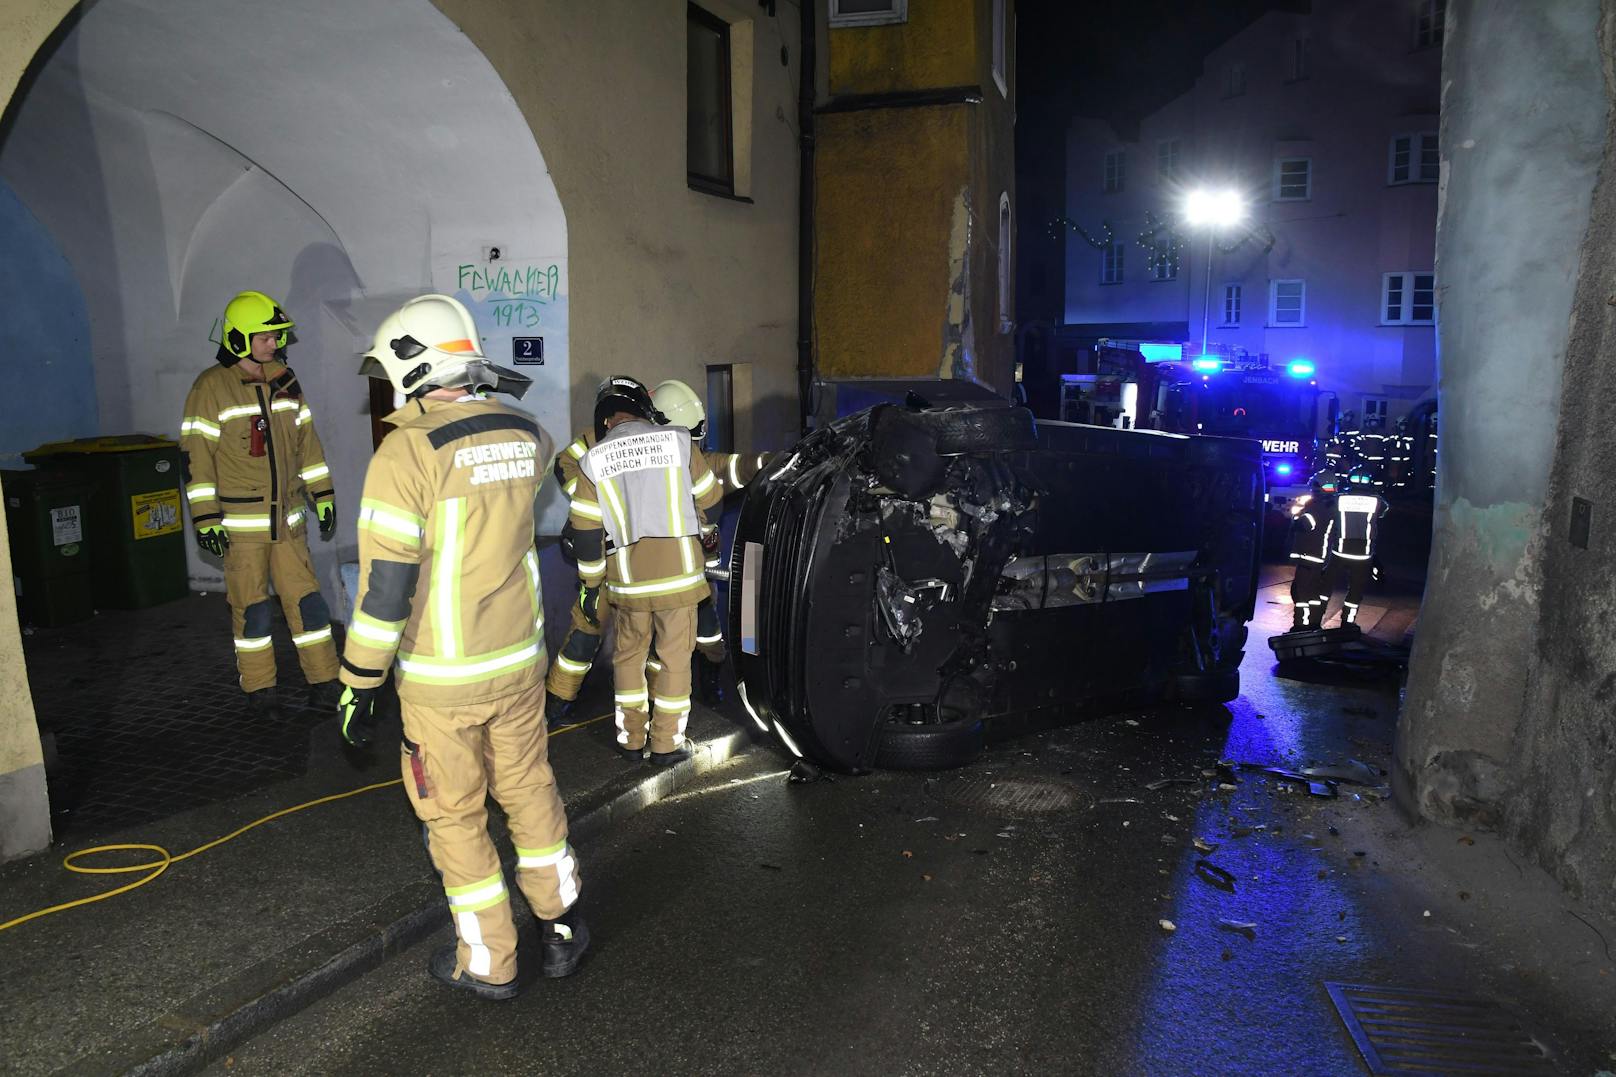 Der Alko-Lenker verlor in Jenbach die Kontrolle über sein Fahrzeug und kollidierte mit einem Randstein. Der Pkw kippte daraufhin um und kam auf der Fahrerseite zu liegen. 